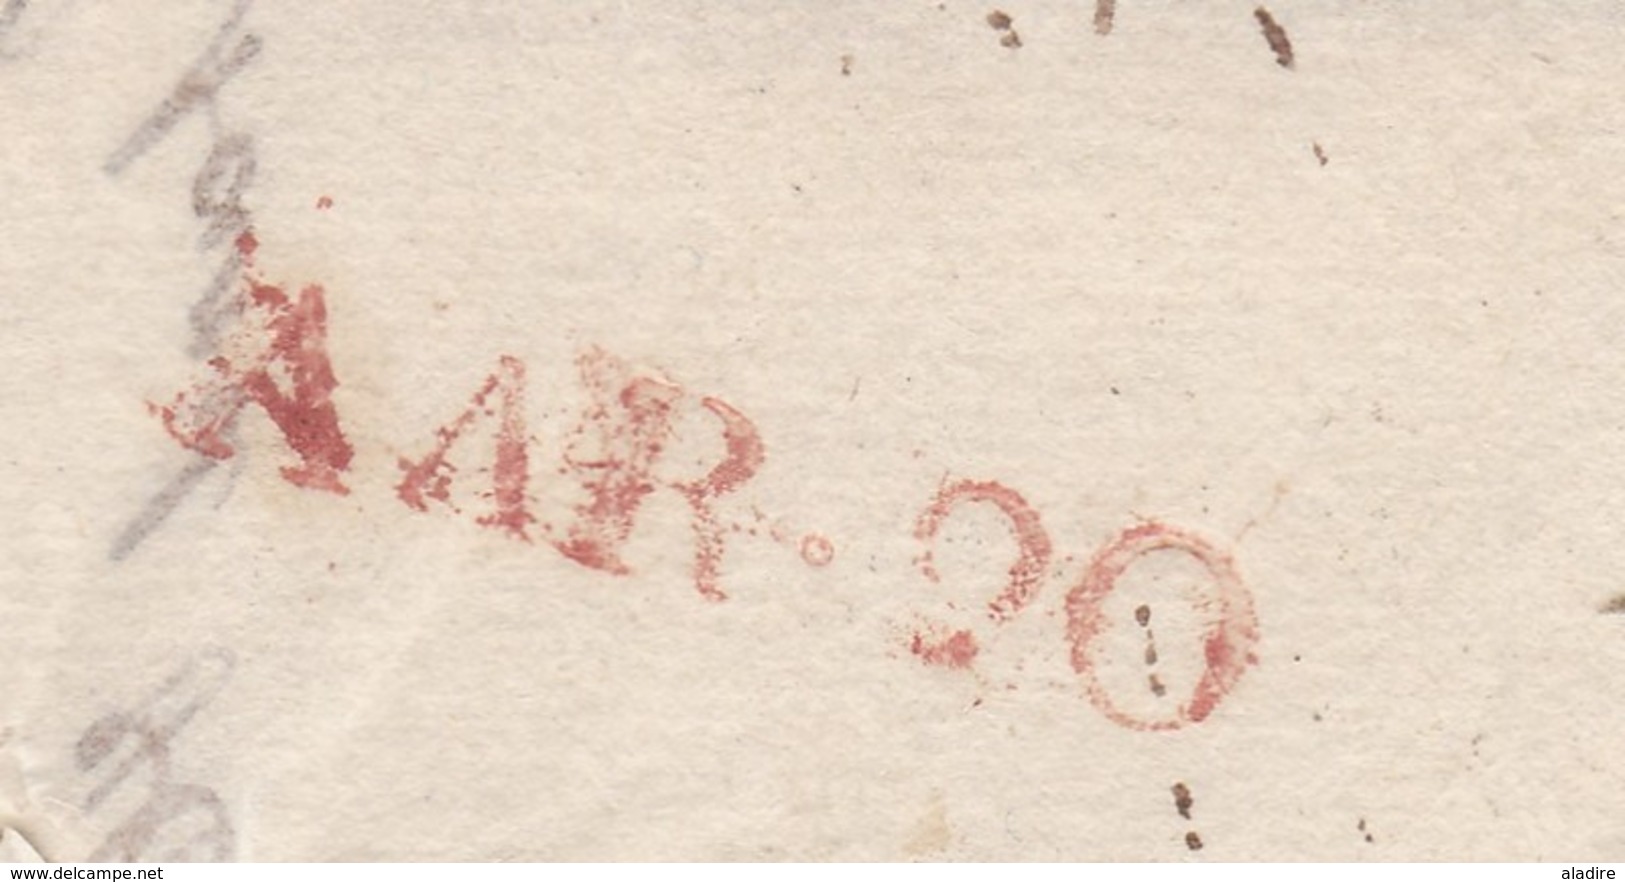 1833 - Marque Postale & date sur lettre avec correspondance + facture de Genève, Suisse vers Chambéry, Savoie